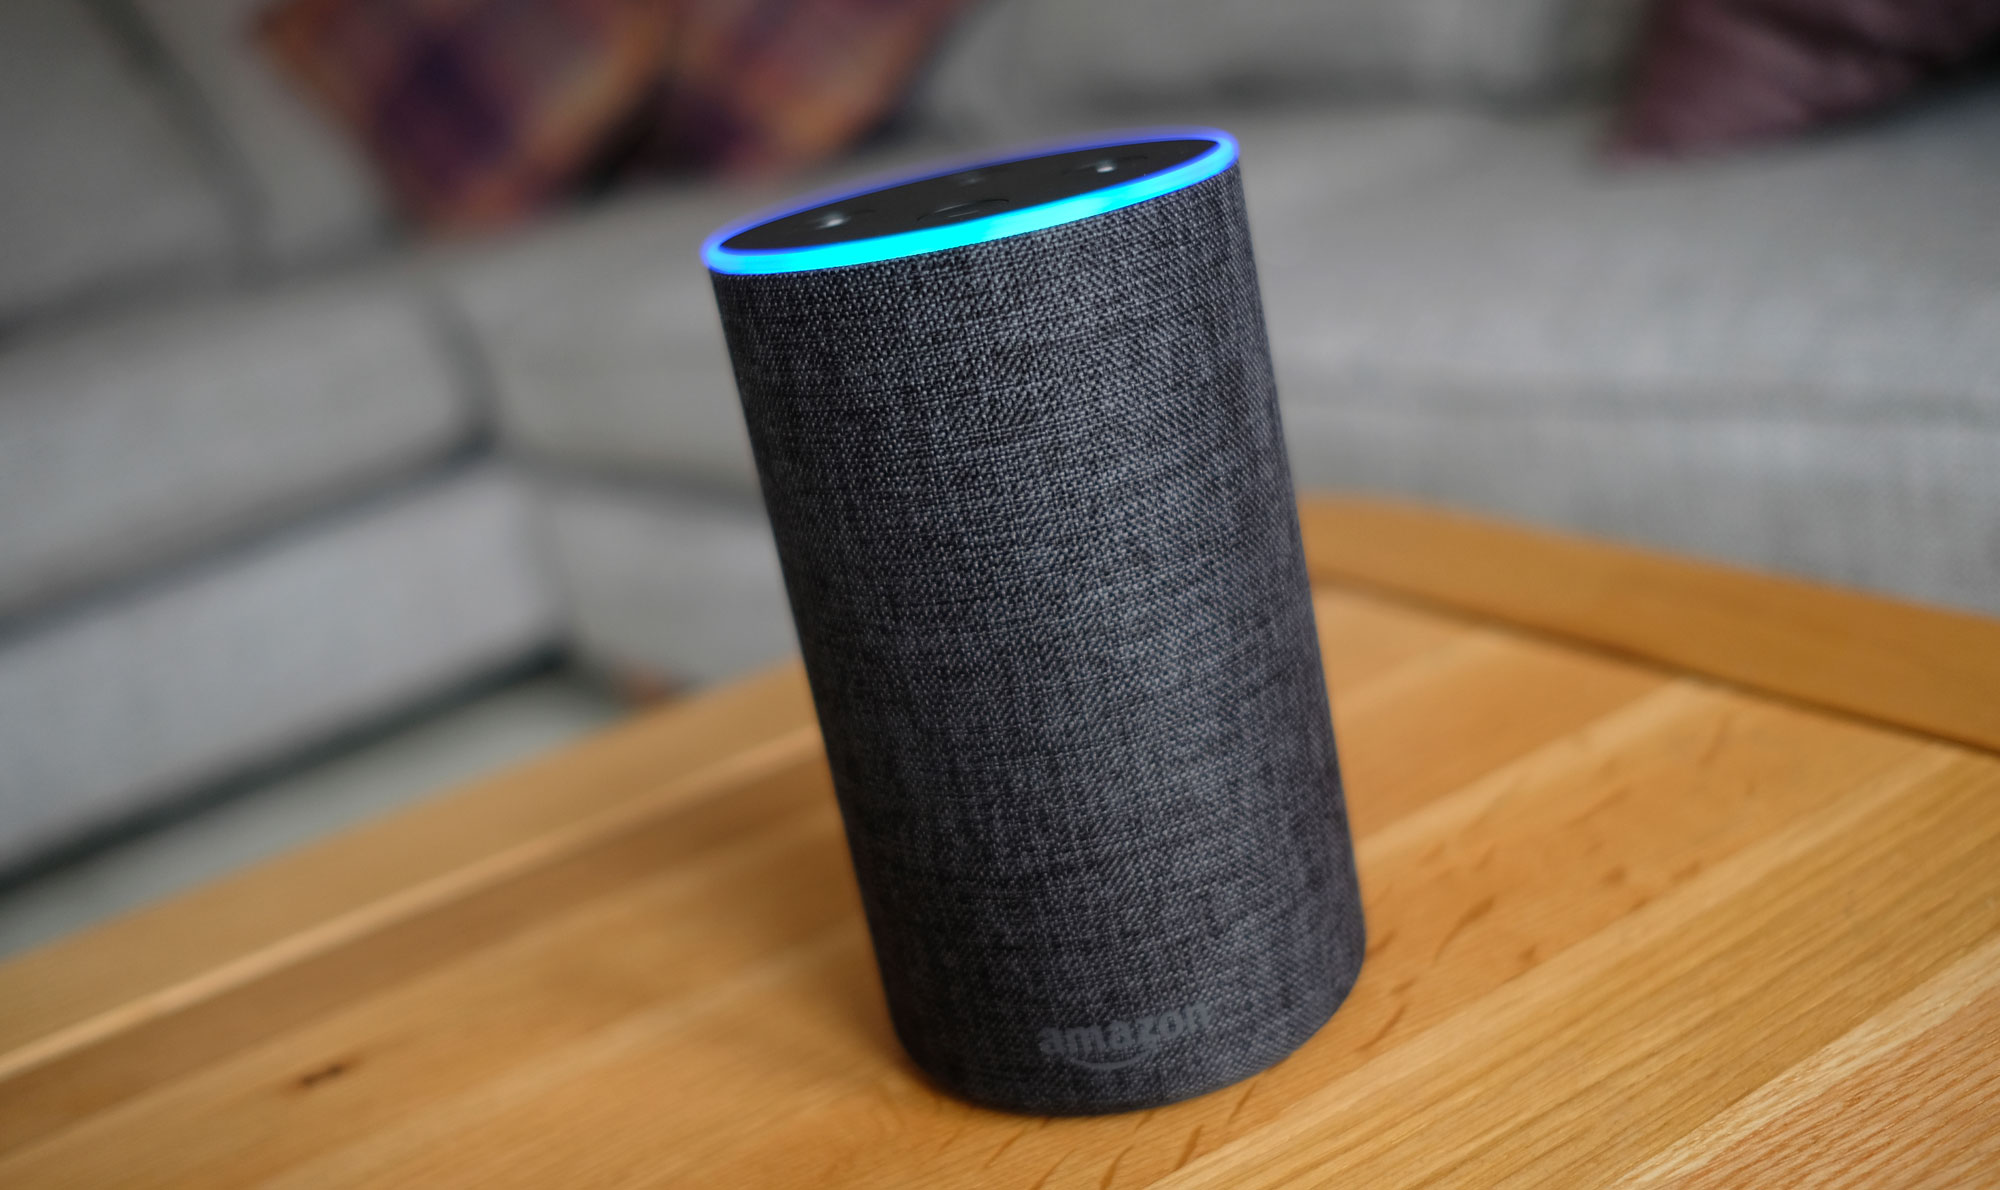 An Amazon Echo smart speaker on a table